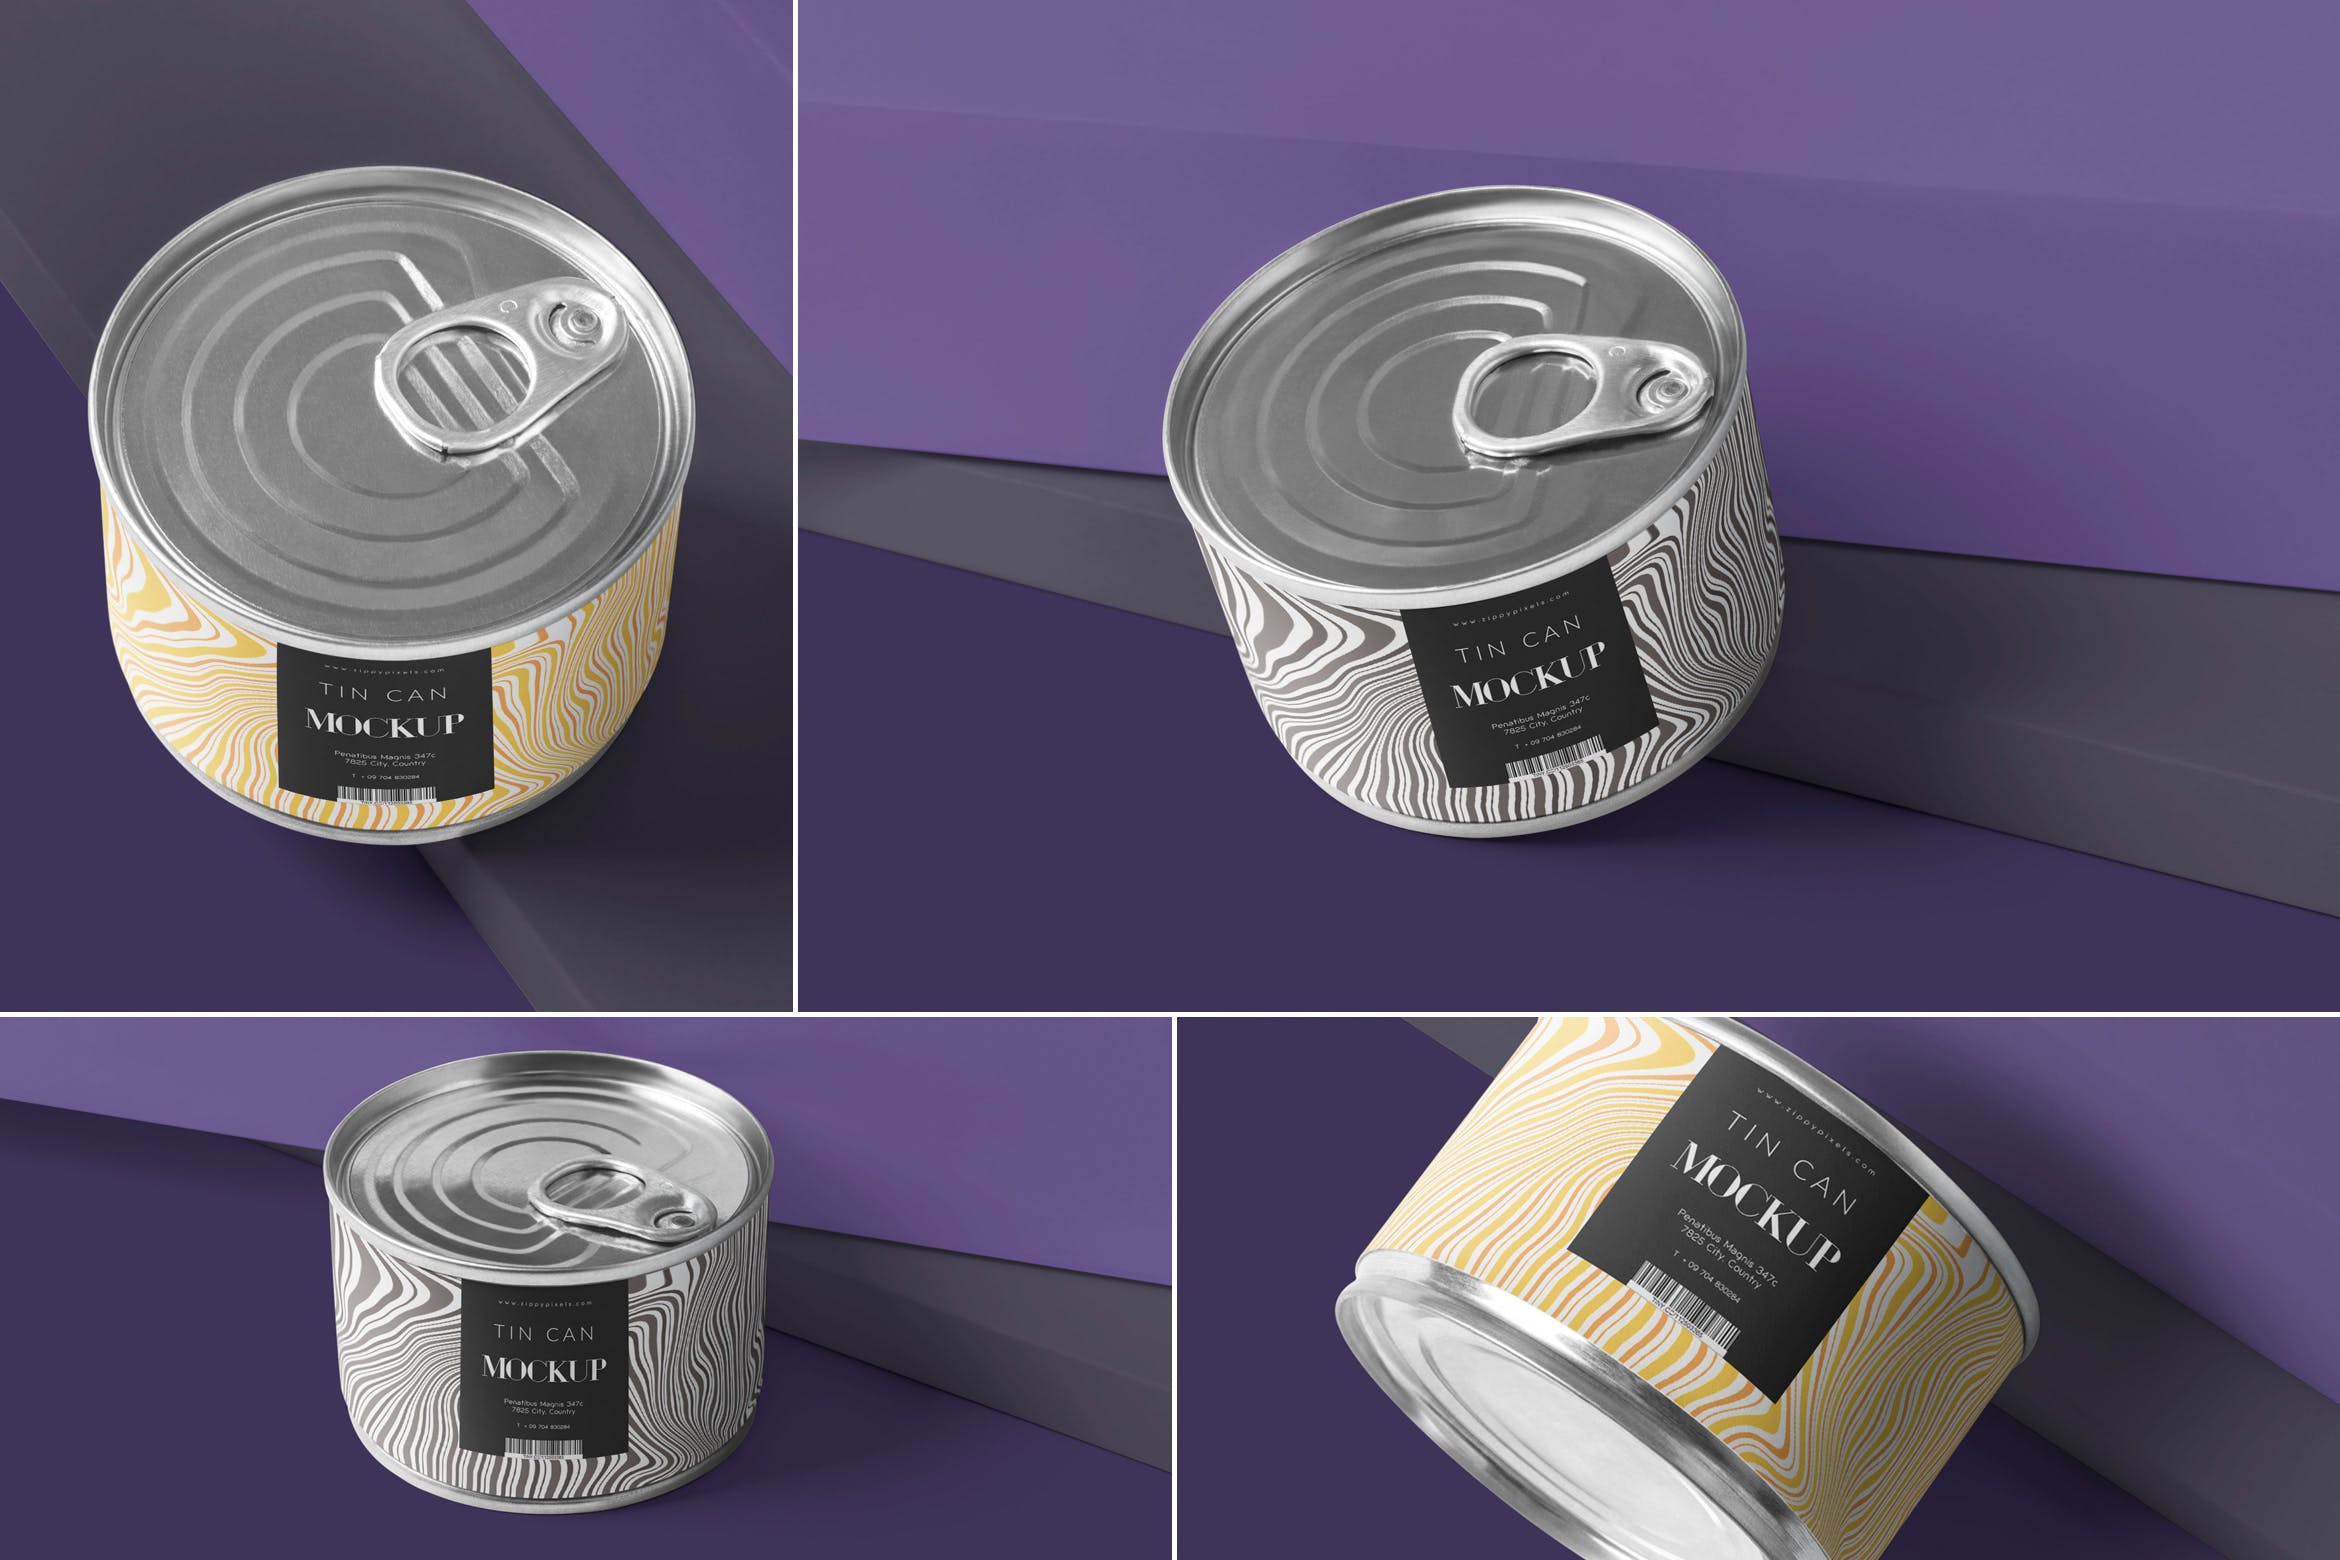 食品罐头外观设计效果图样机PSD模板 Small Food Tin Can Mockups插图